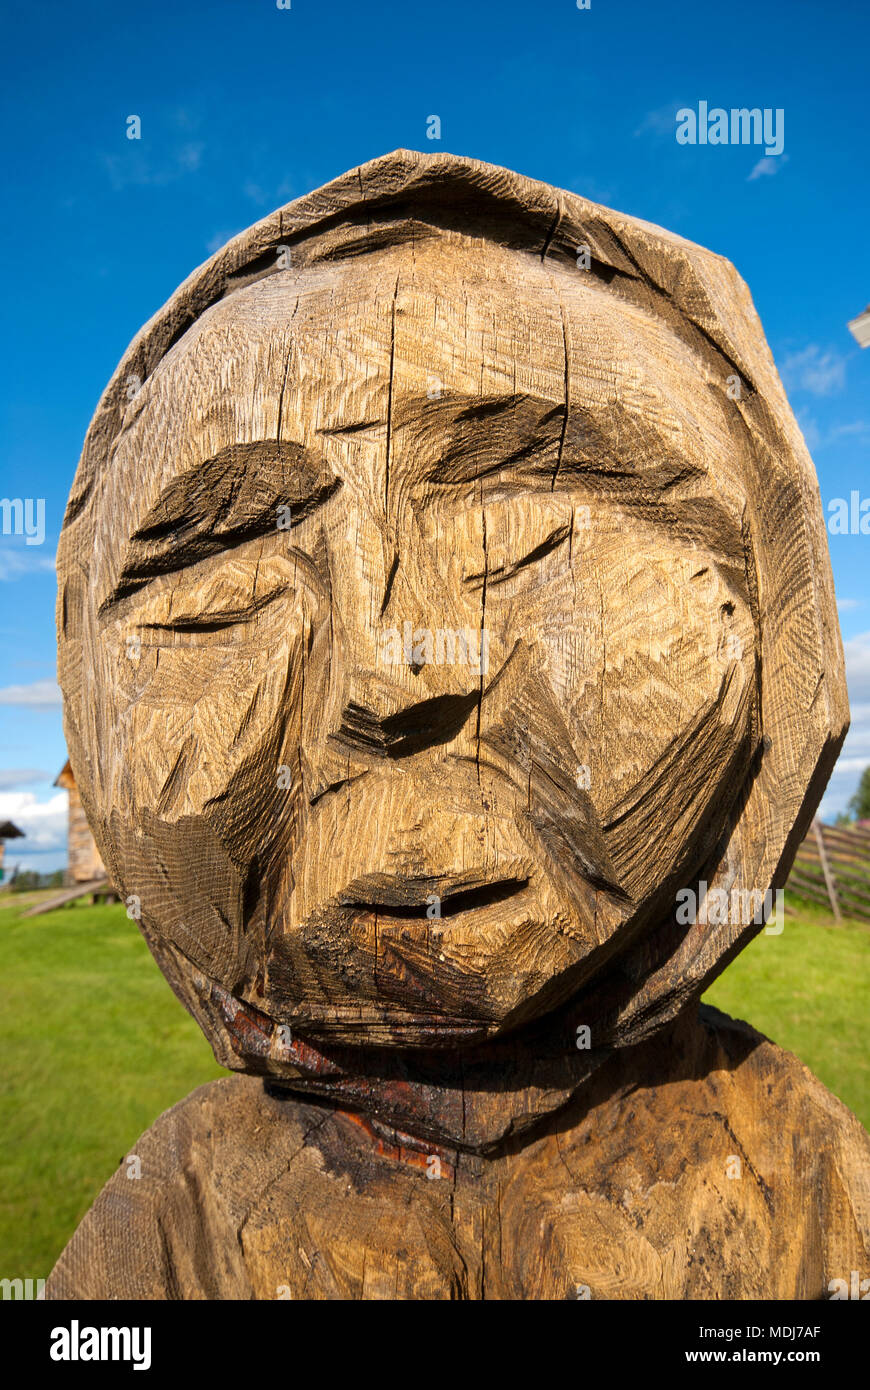 Wooden sculpture in Homestead Open-Air Museum, Jukkasjarvi, Norrbotten County, Sweden Stock Photo